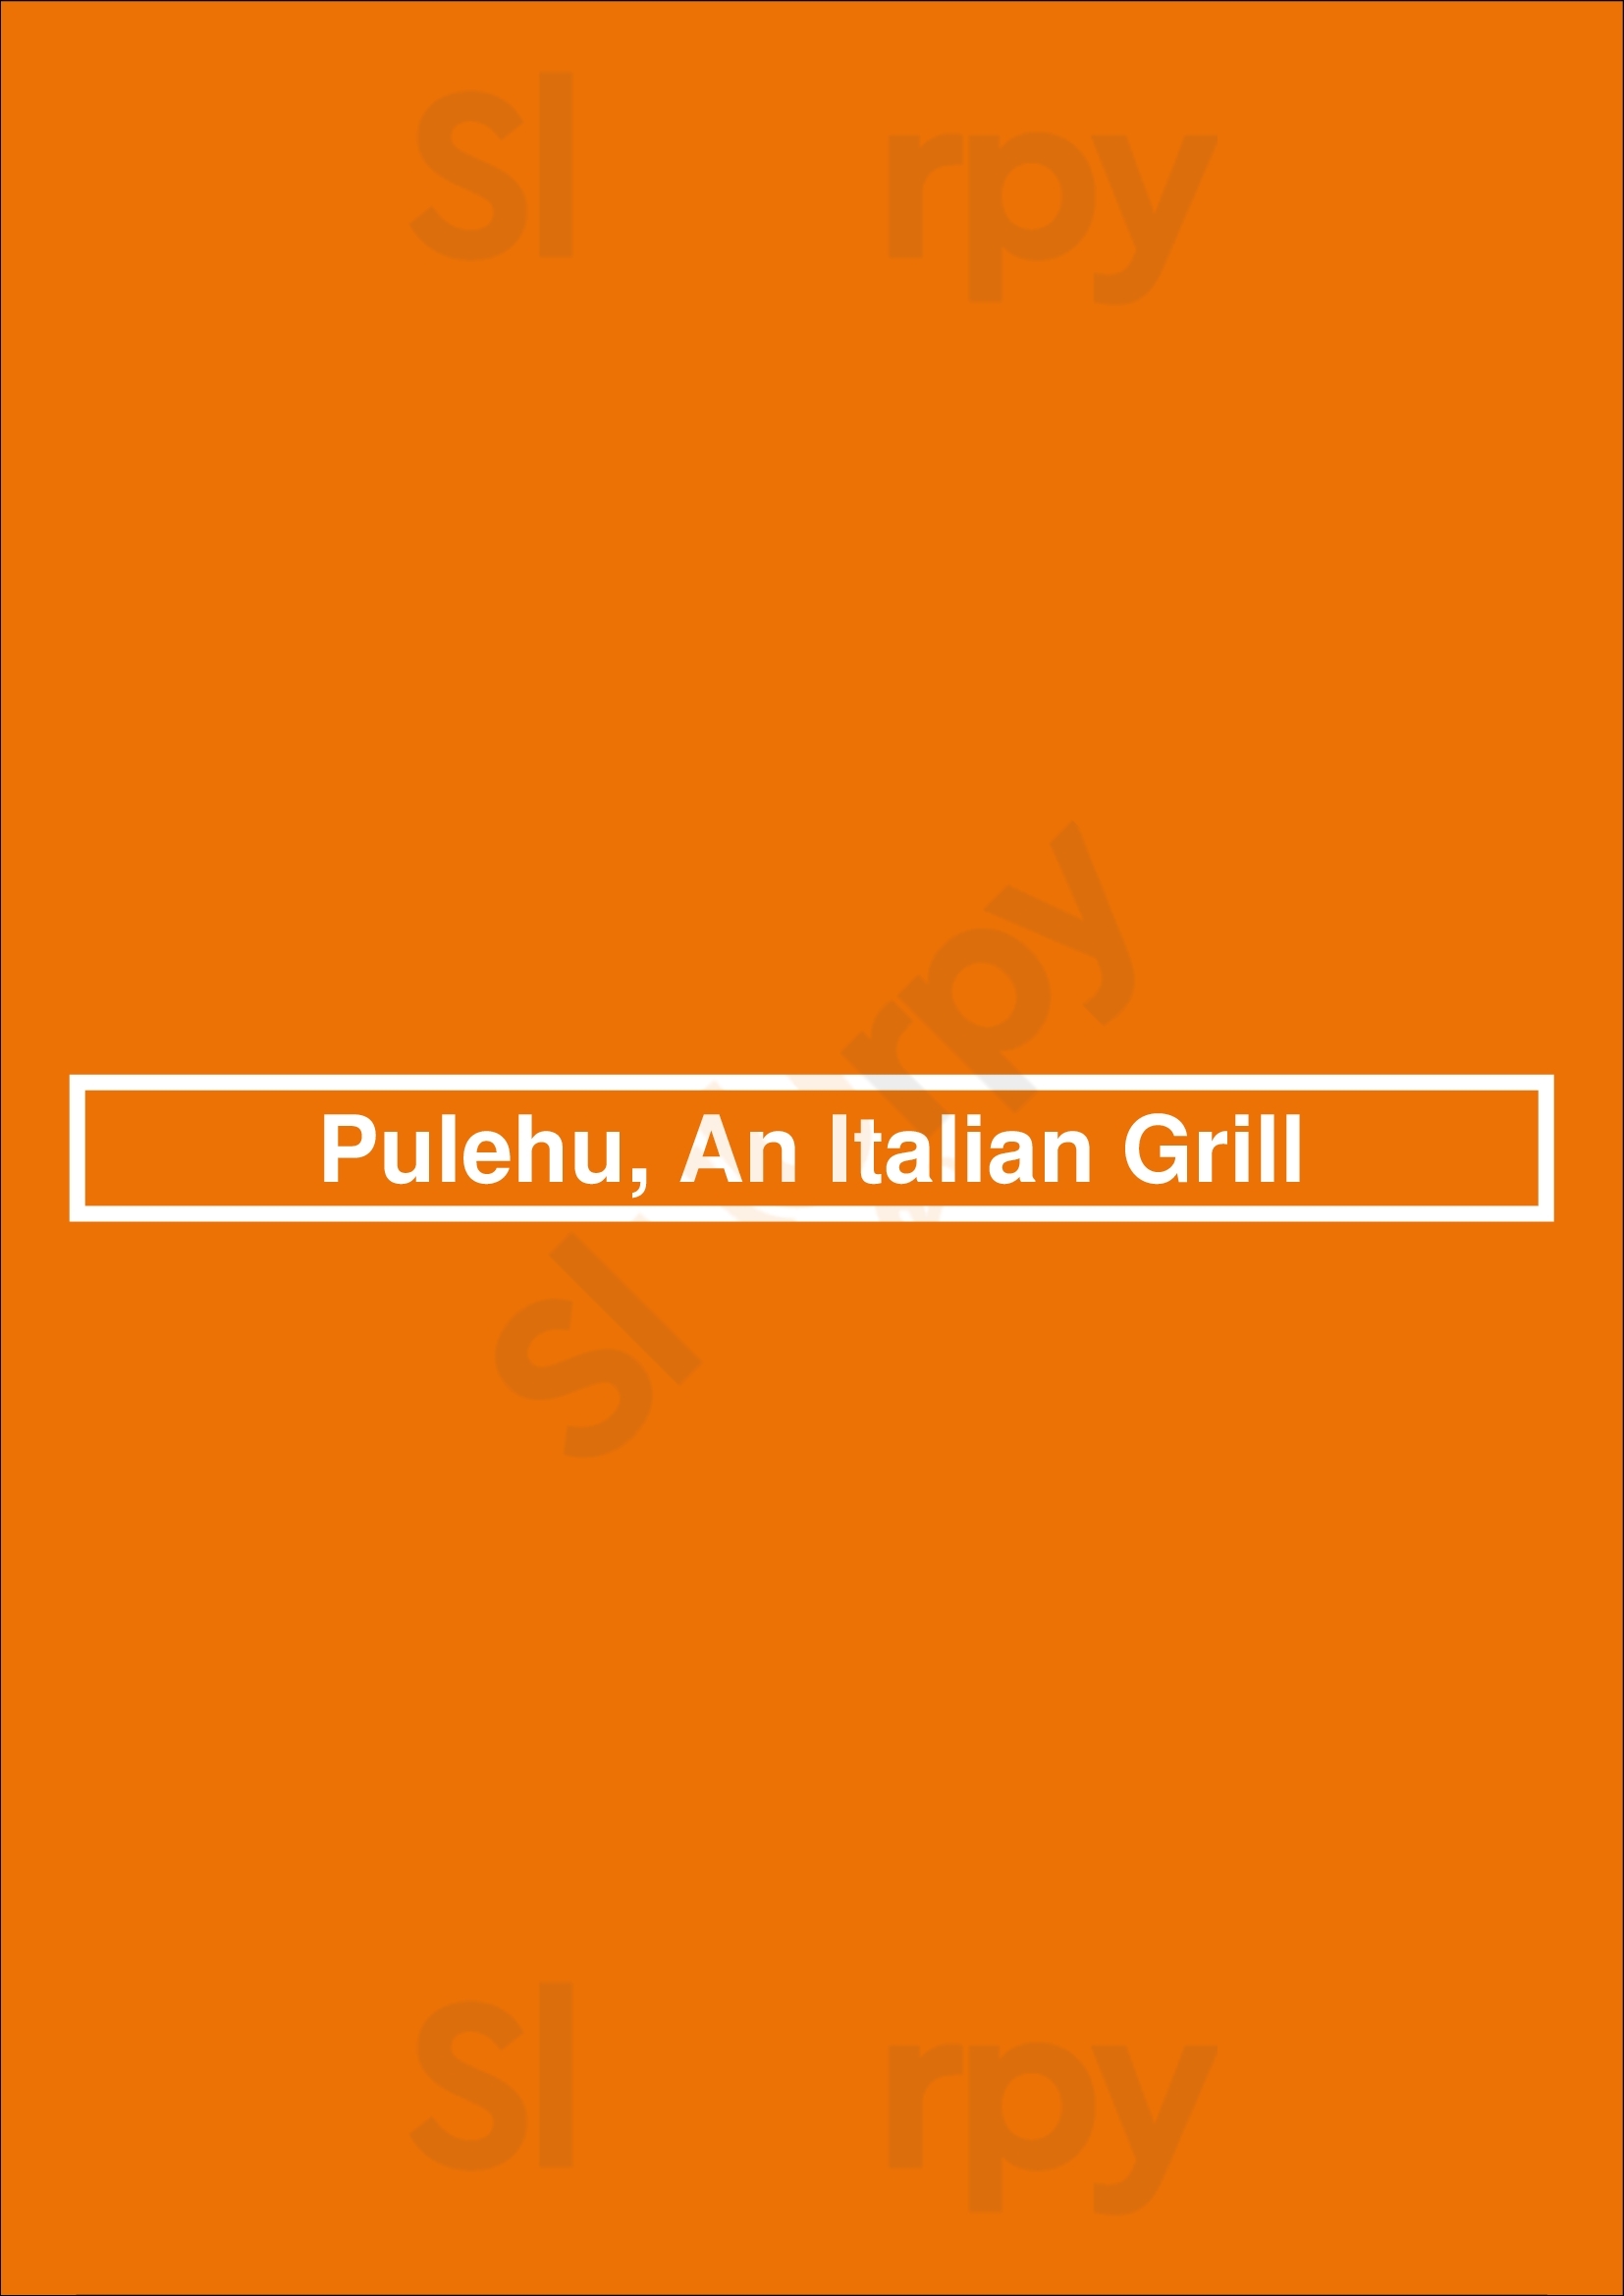 Pulehu, An Italian Grill Lahaina Menu - 1